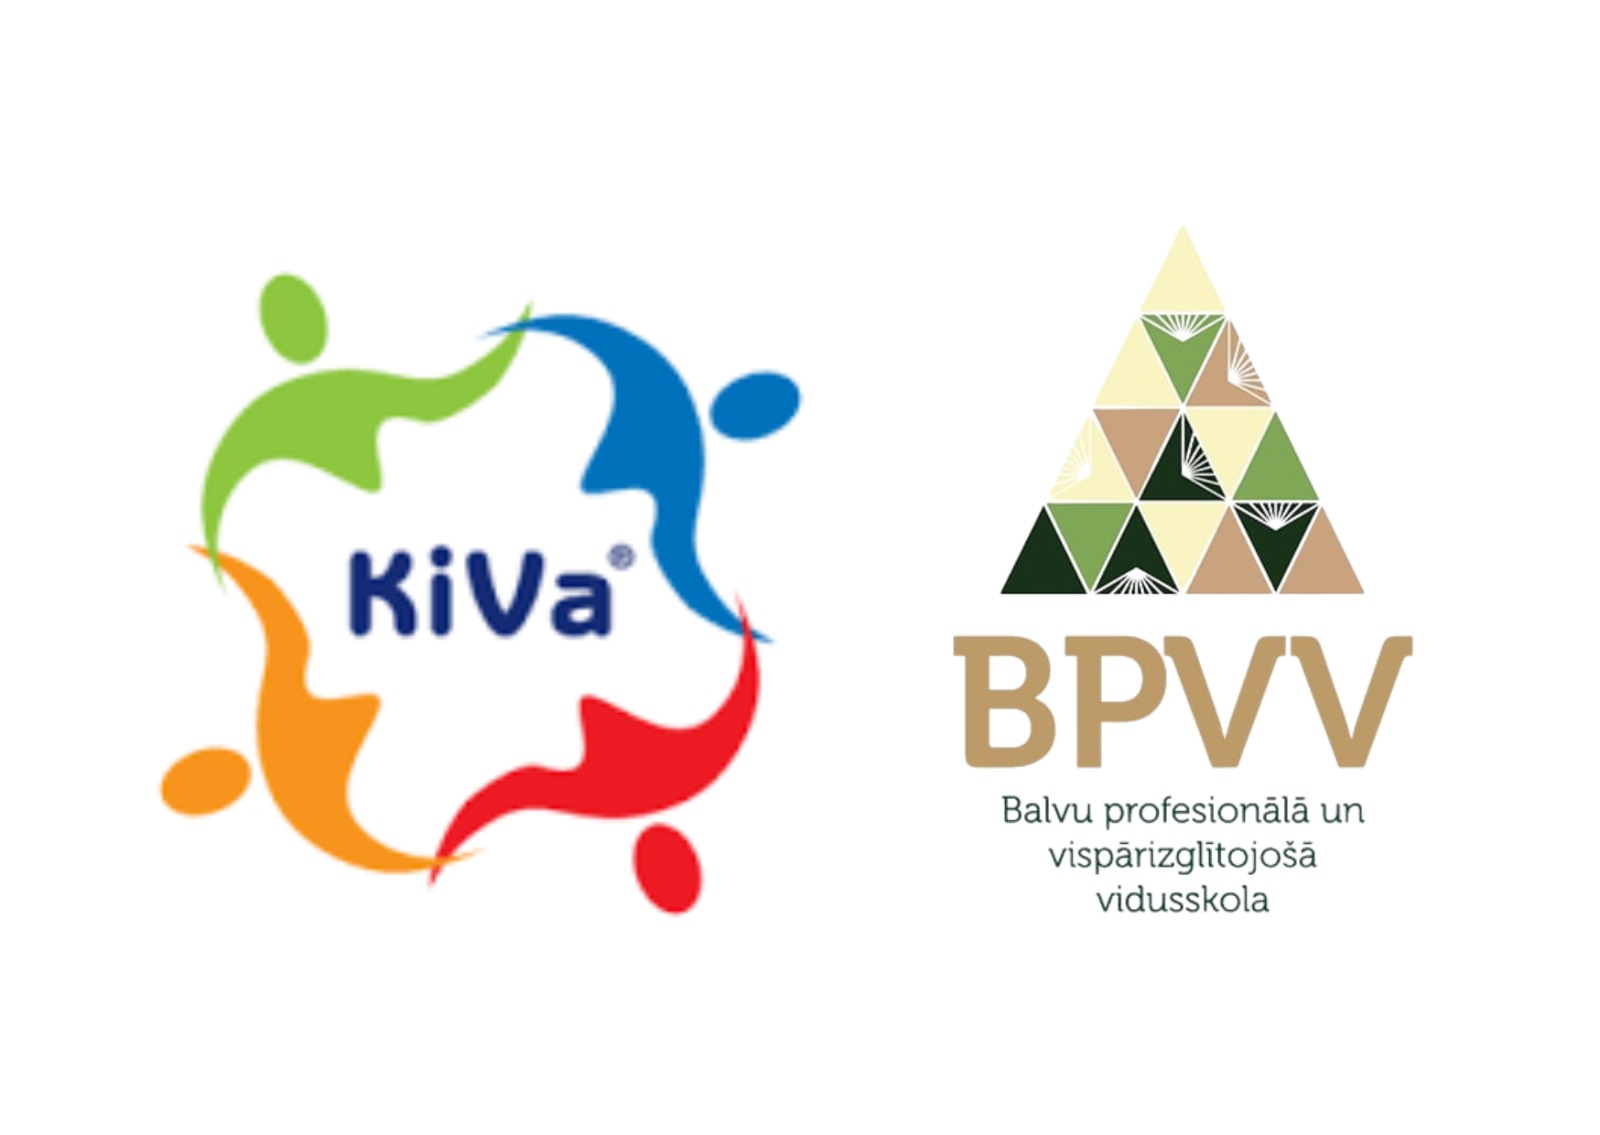 Kiva un Bpvv logo